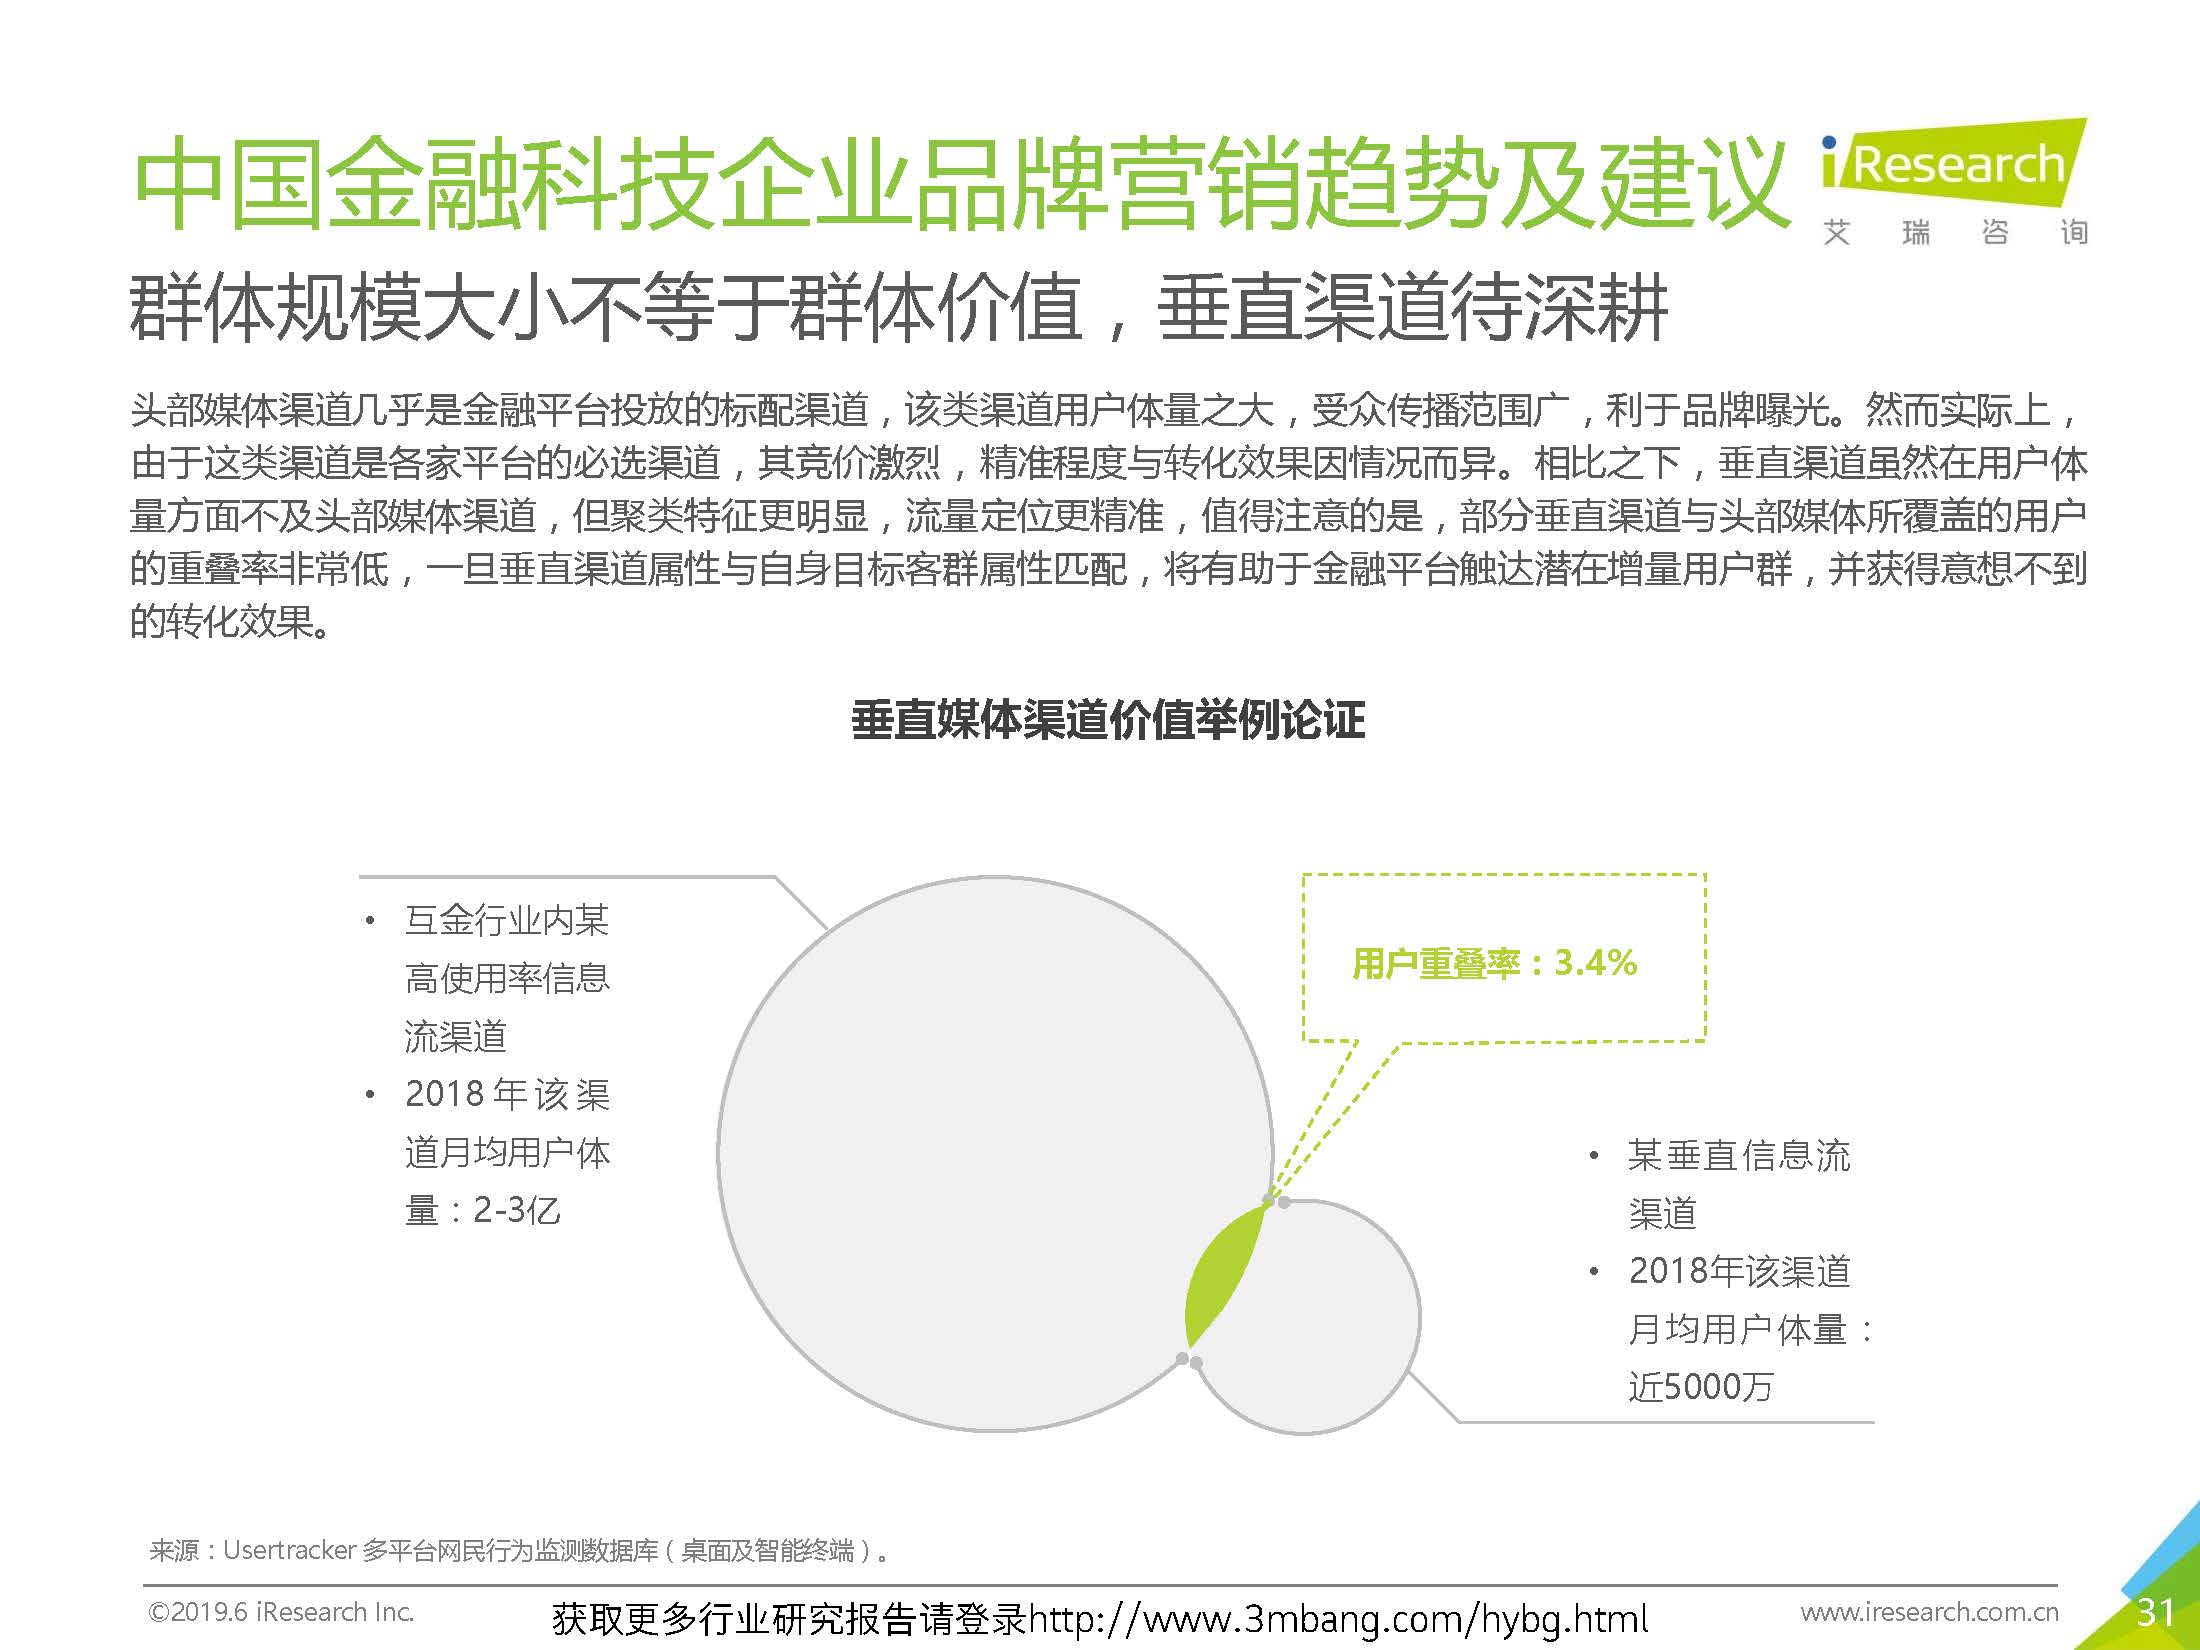 艾瑞：2019年-静待惊蛰-中国金融科技企业品牌营销研究报告(37页)_页面_31.jpg